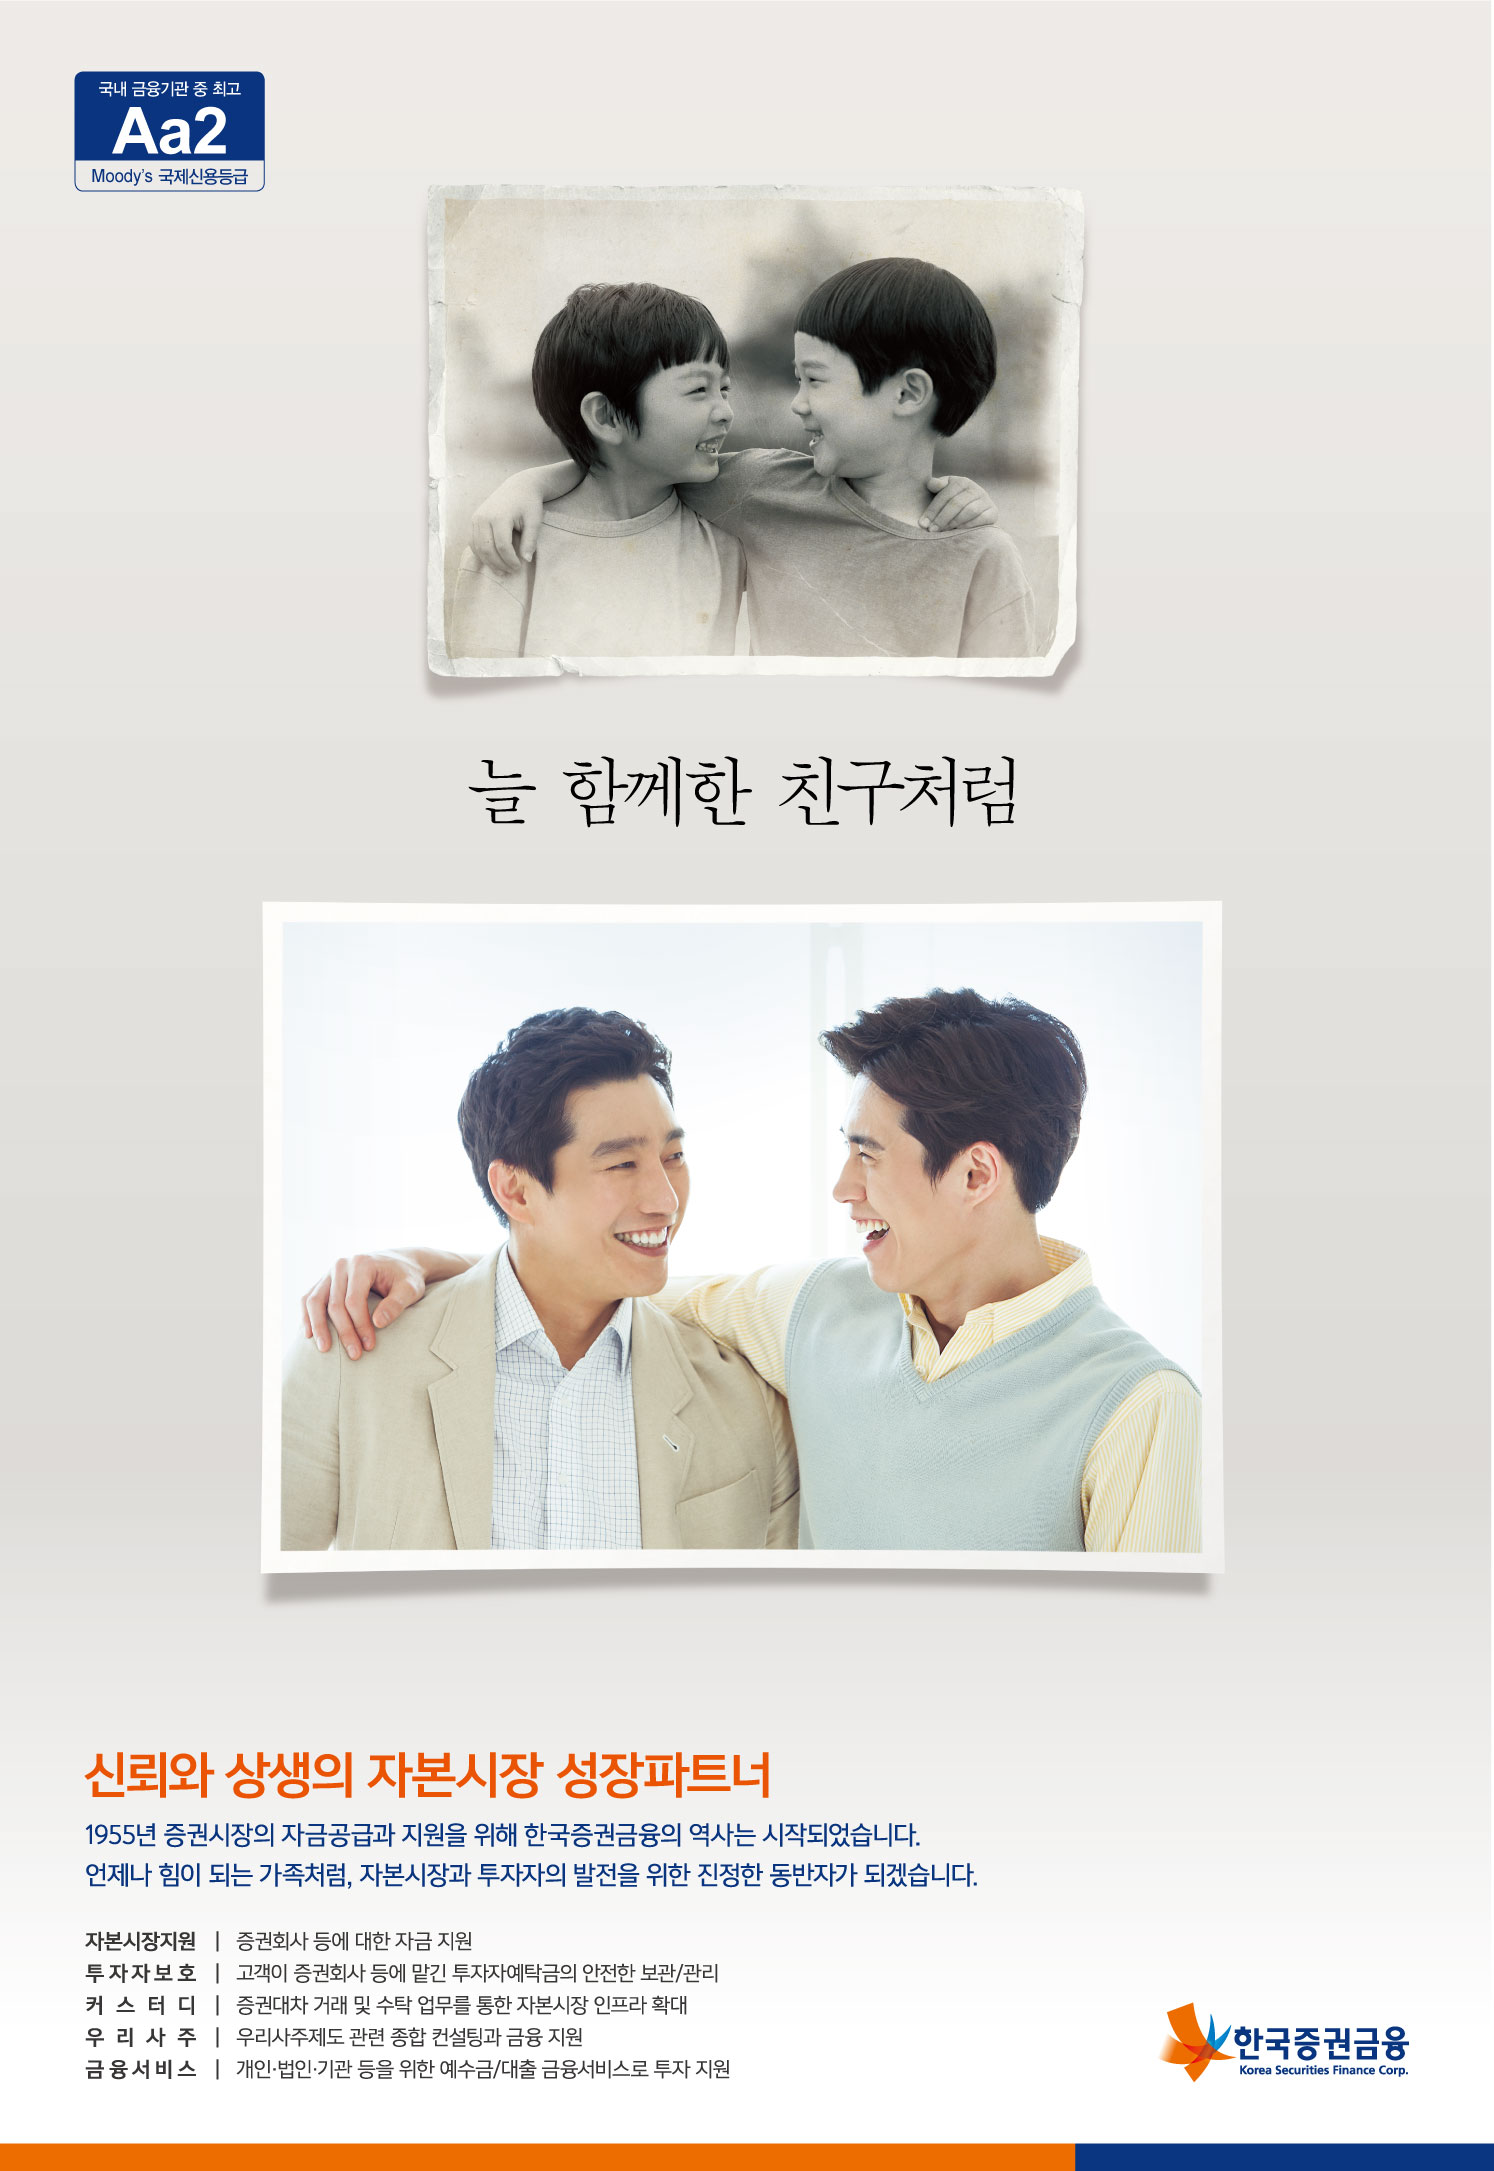 15년도 08월 26일 한국증권금융 홍보 포스터